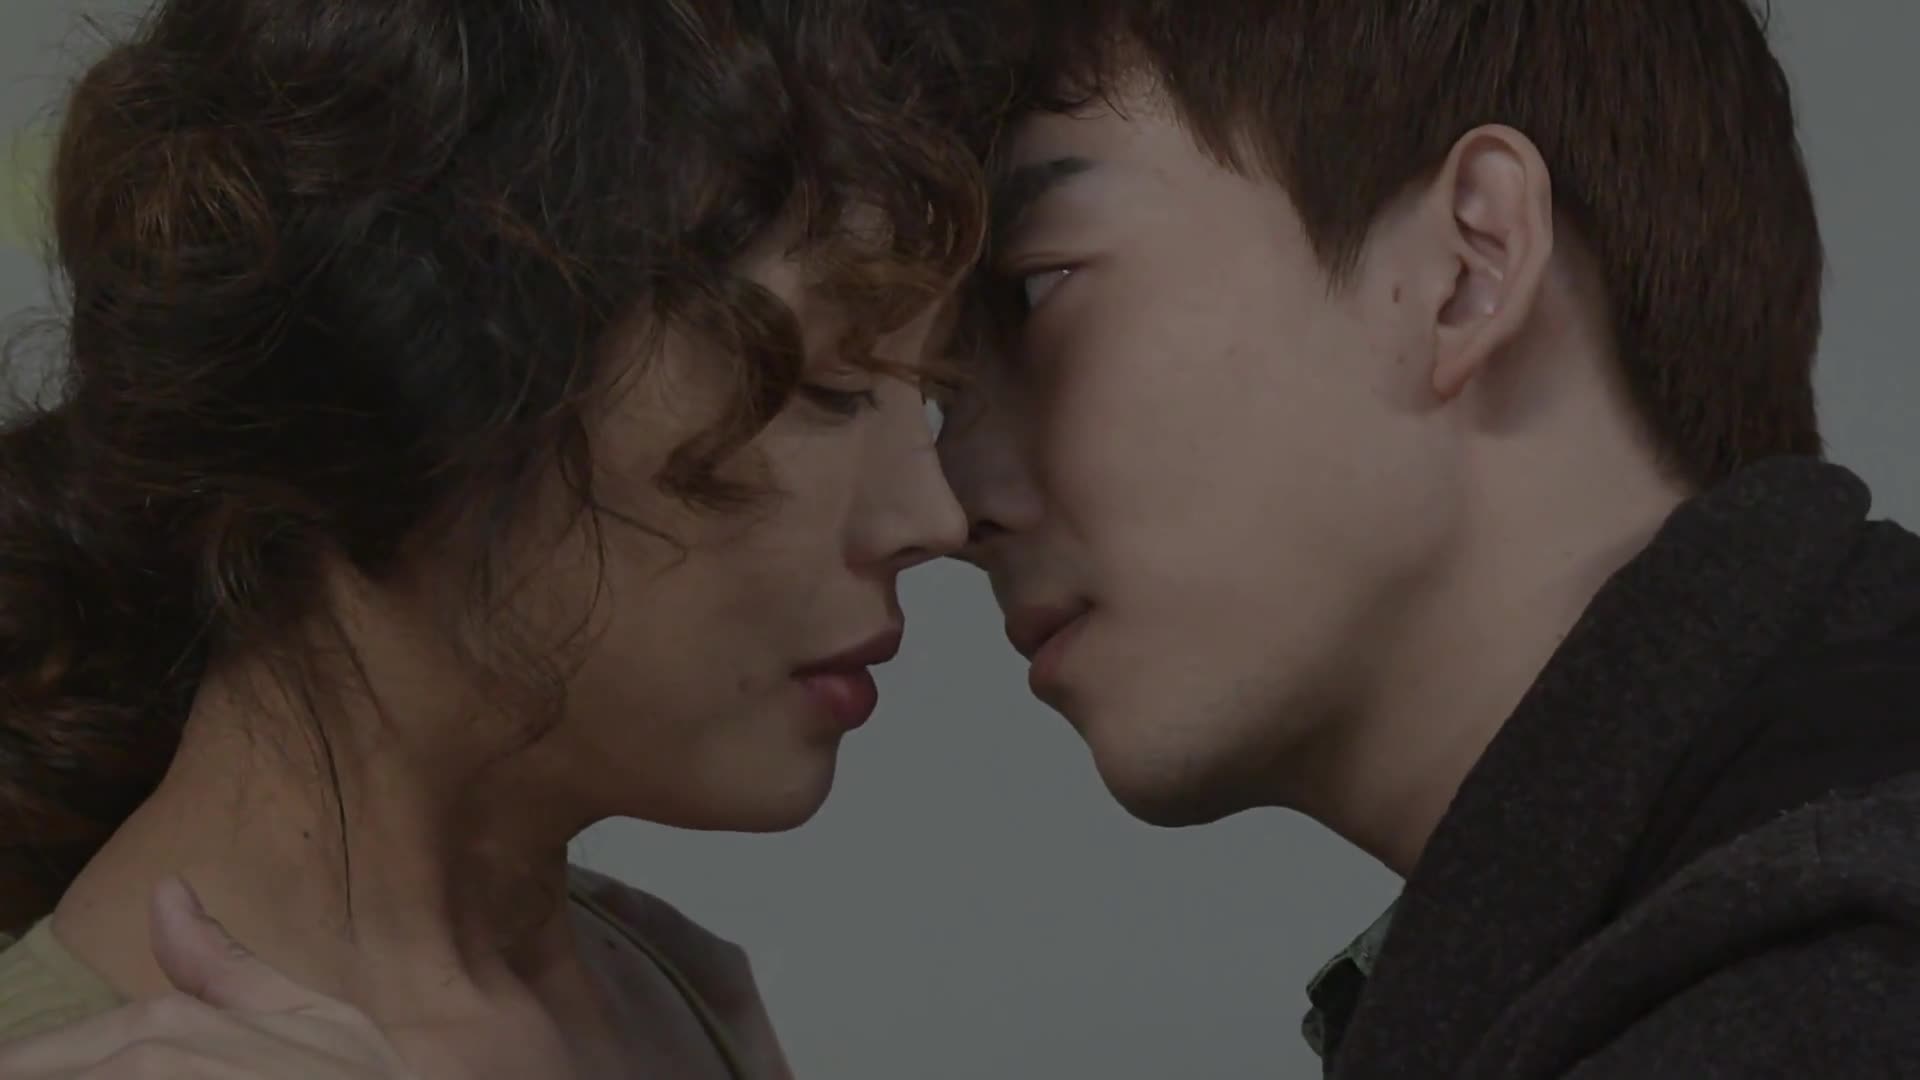 韩国爱情电影:漂亮阿姨被小伙逼入墙角,躲不了只能承受了